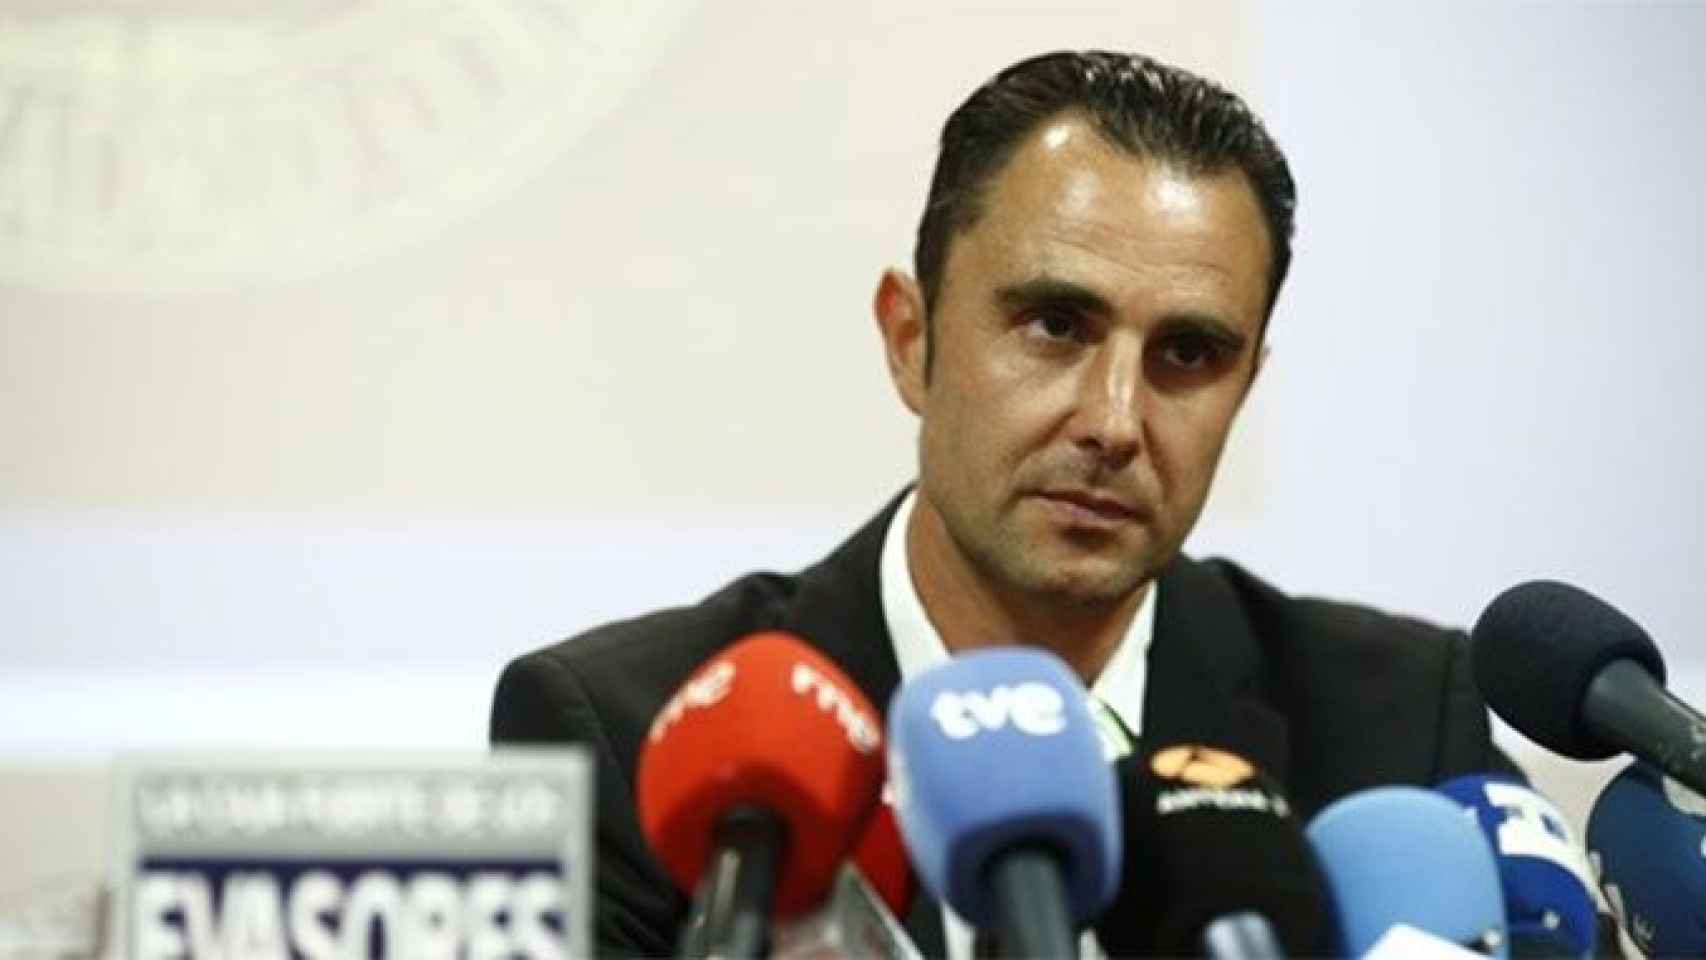 La policía española detiene a Hervé Falciani para su extradición a Suiza